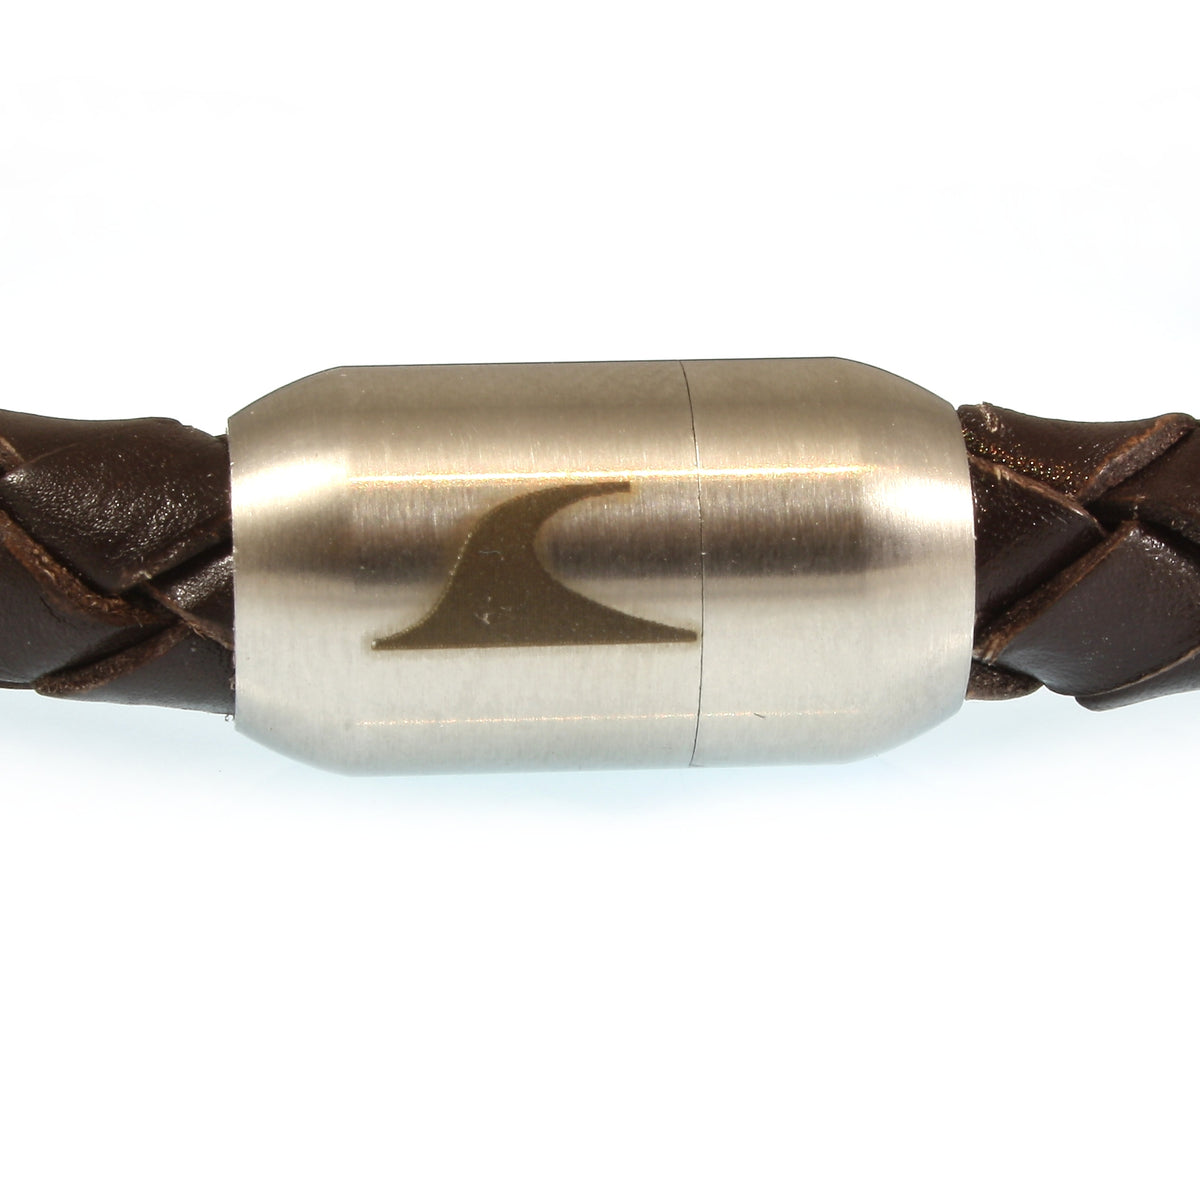 Herren-Leder-Armband-Fuerte-braun-geflochten-Edelstahlverschluss-detail-wavepirate-shop-fxl